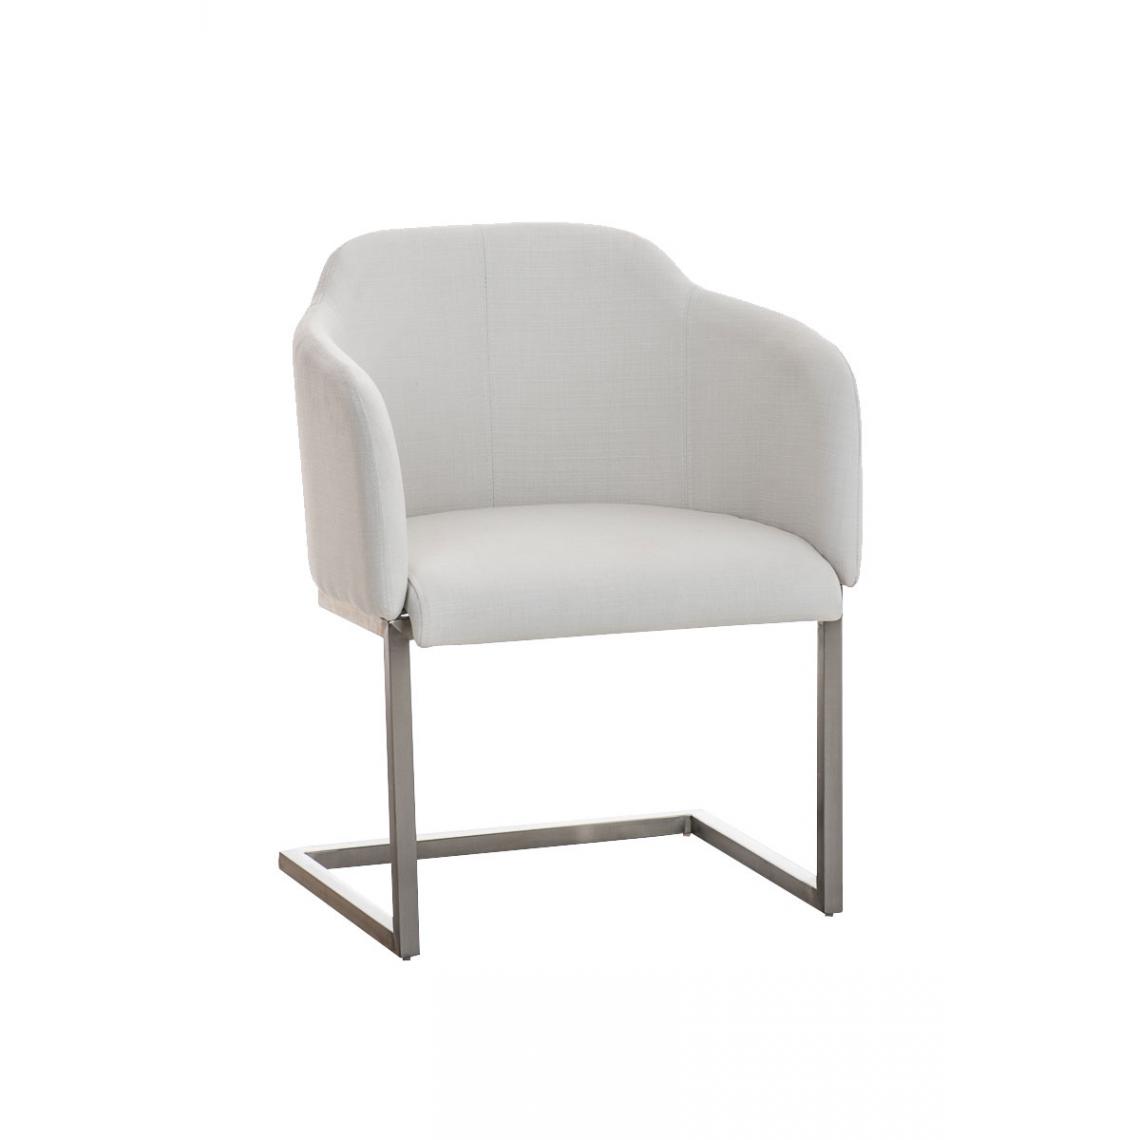 Icaverne - Admirable Chaise visiteur en tissu serie Asuncion couleur blanc - Chaises